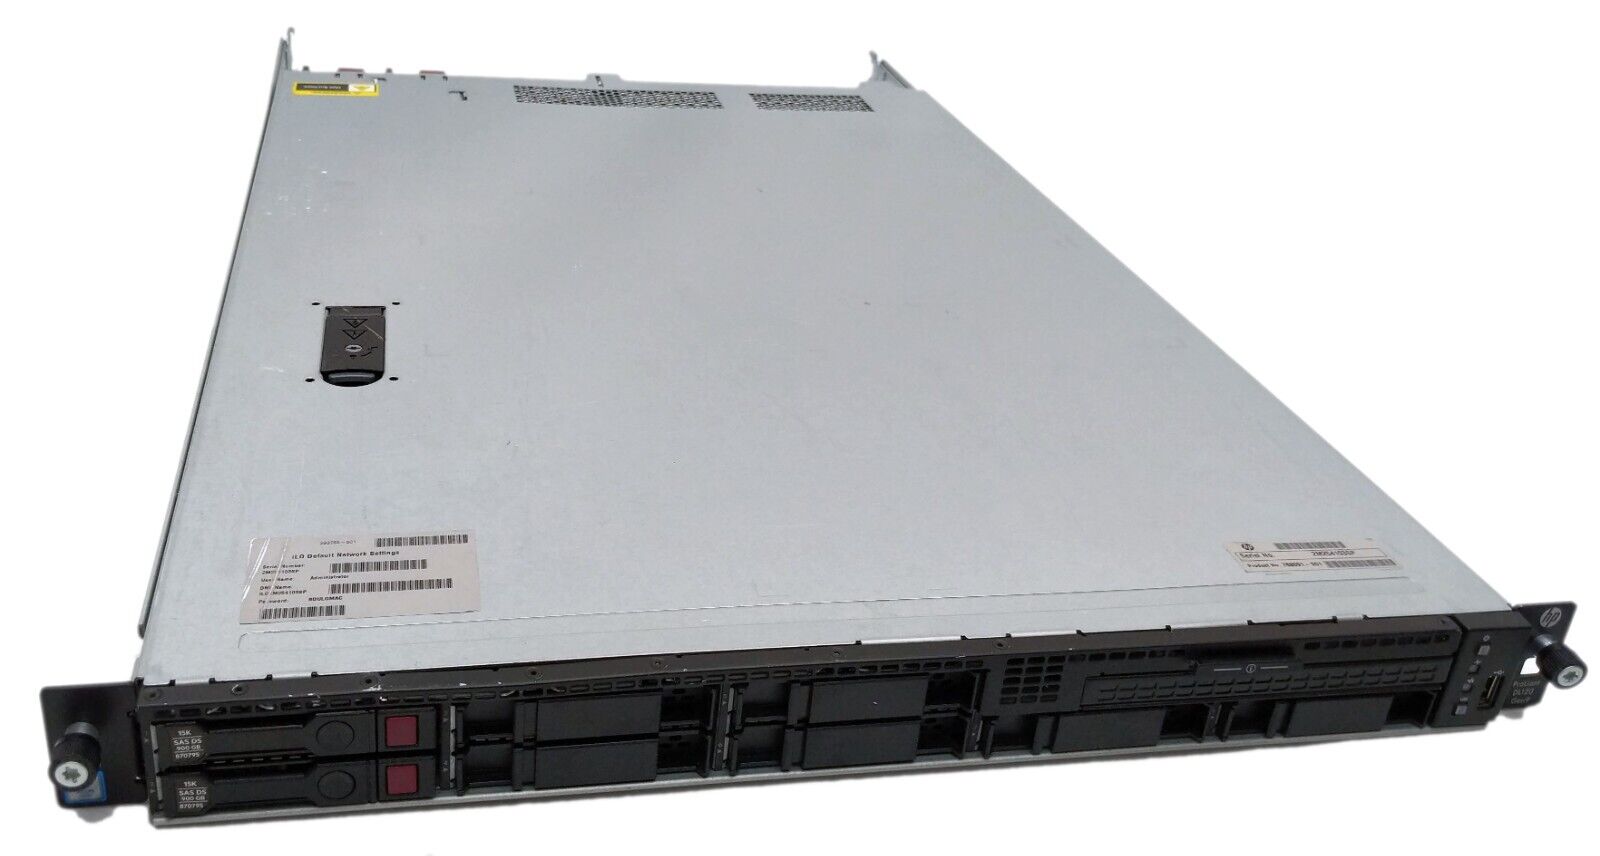 HP ProLiant DL120 Gen9 Server Xeon E5-2620 v3 2.40GHz 64GB RAM x2 900GB SAS HDD